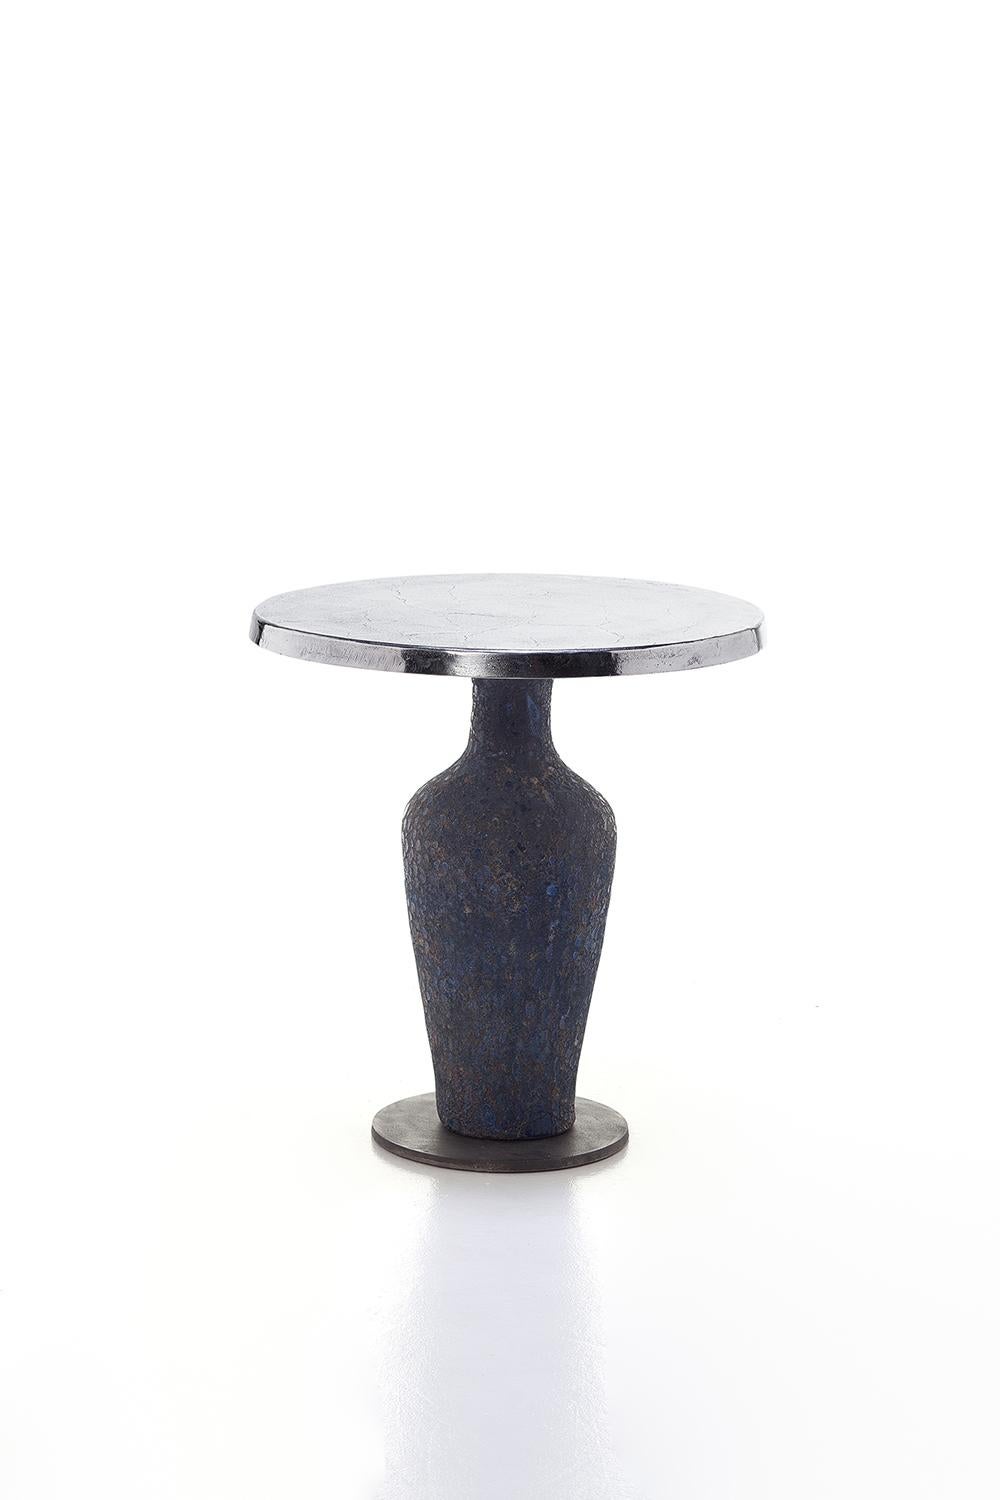 Une combinaison audacieuse de matériaux caractérise la famille de tables Moon 39/40/42 : disponibles en différentes tailles, elles ont une base en céramique bleue en forme d'amphore, plus ou moins allongée selon la hauteur du produit, caractérisée